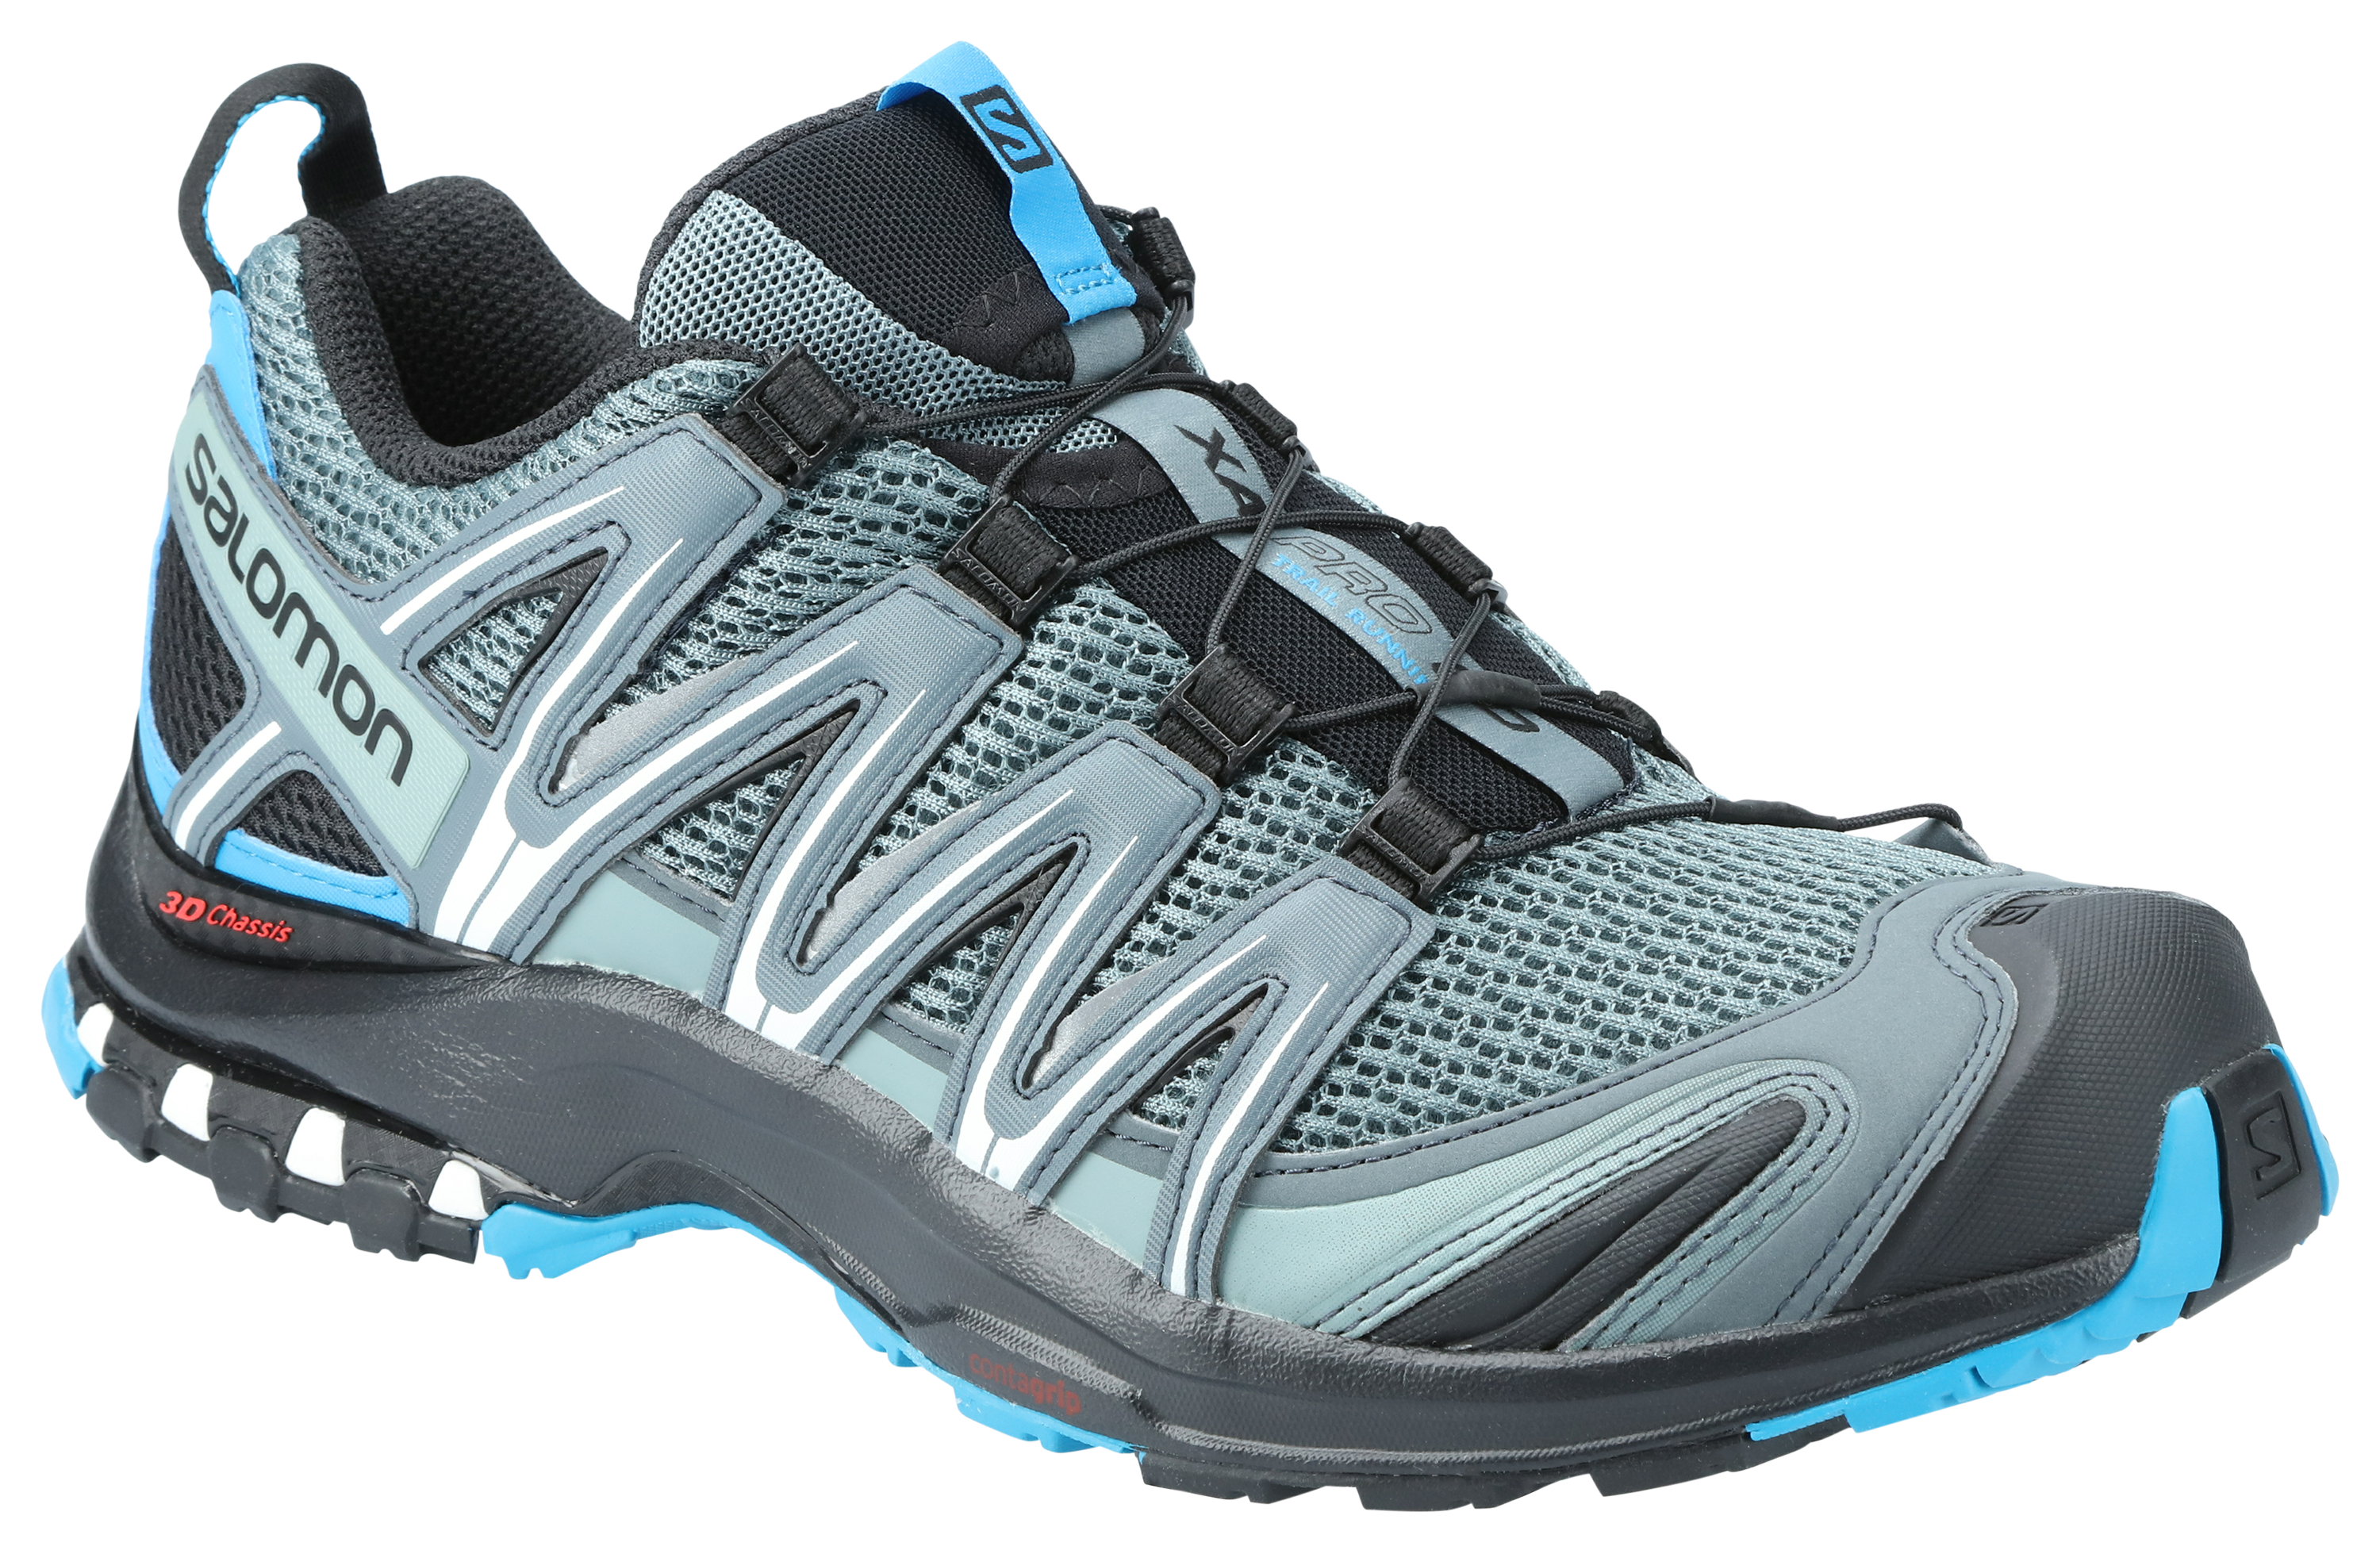 Salomon XA Pro 3D Trail Running Shoes for Men